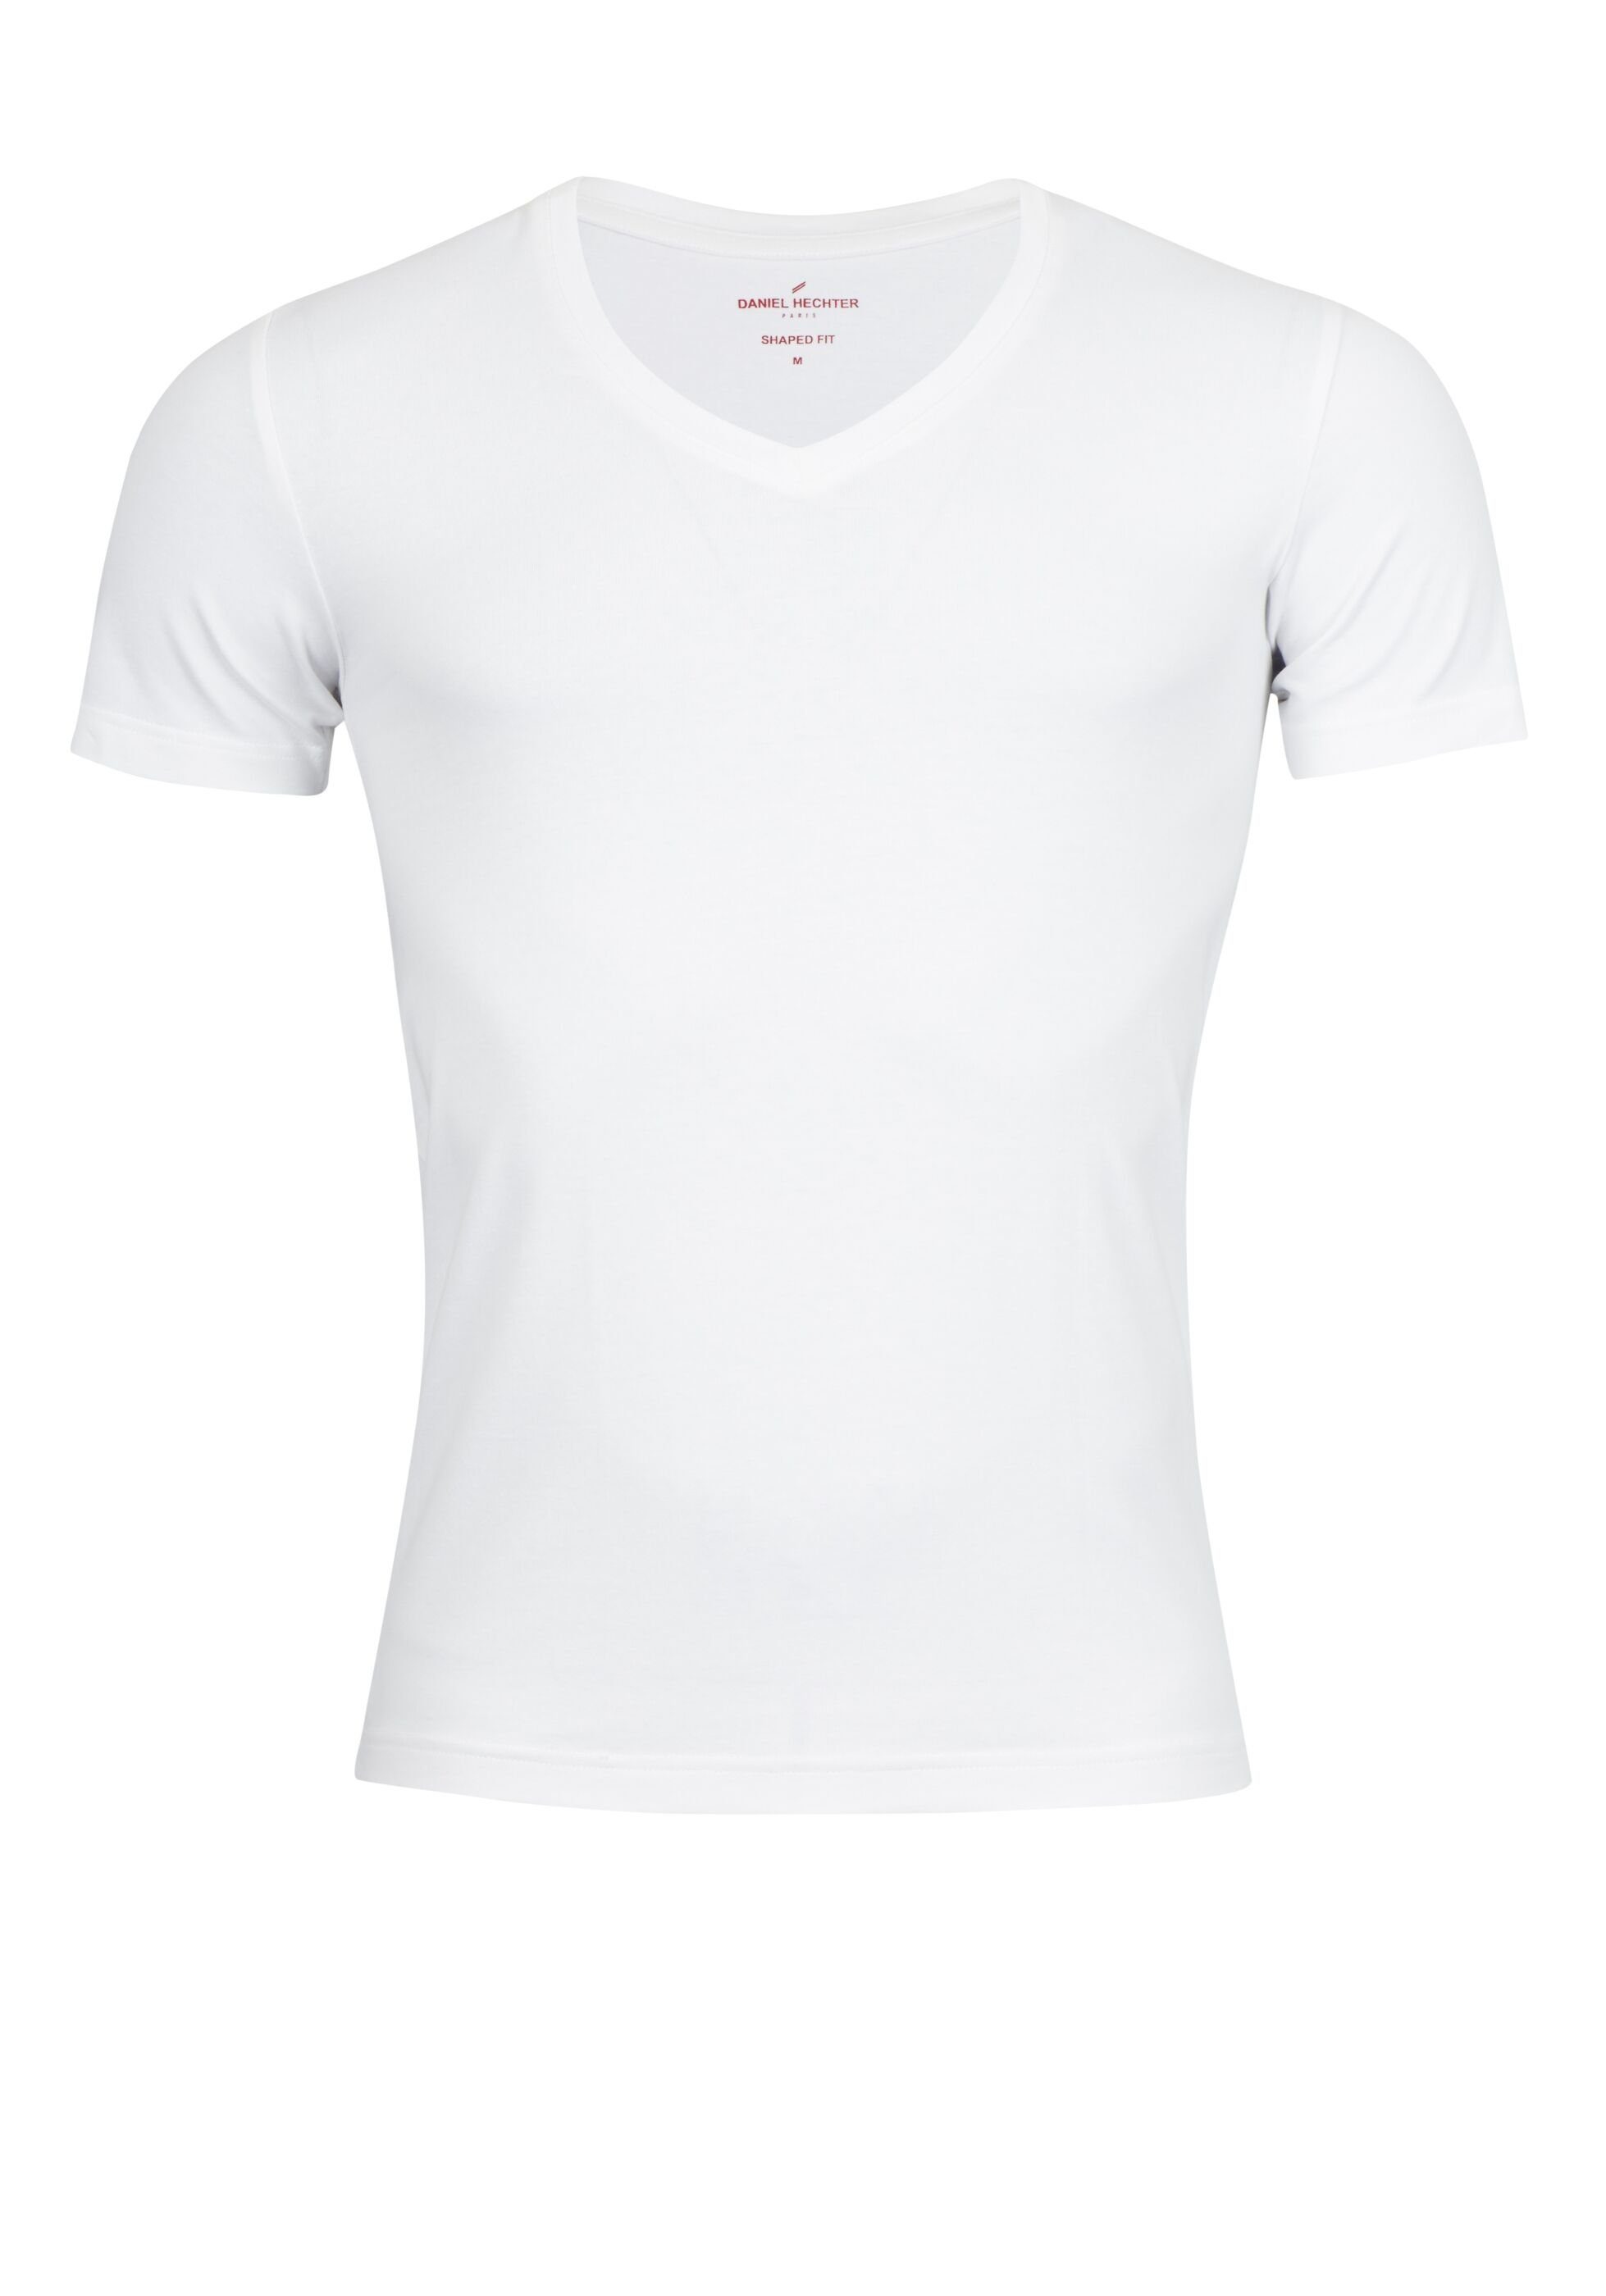 HECHTER PARIS Kurzarmshirt Body-Shape, Angenehme Jersey Qualität mit  Elasthan